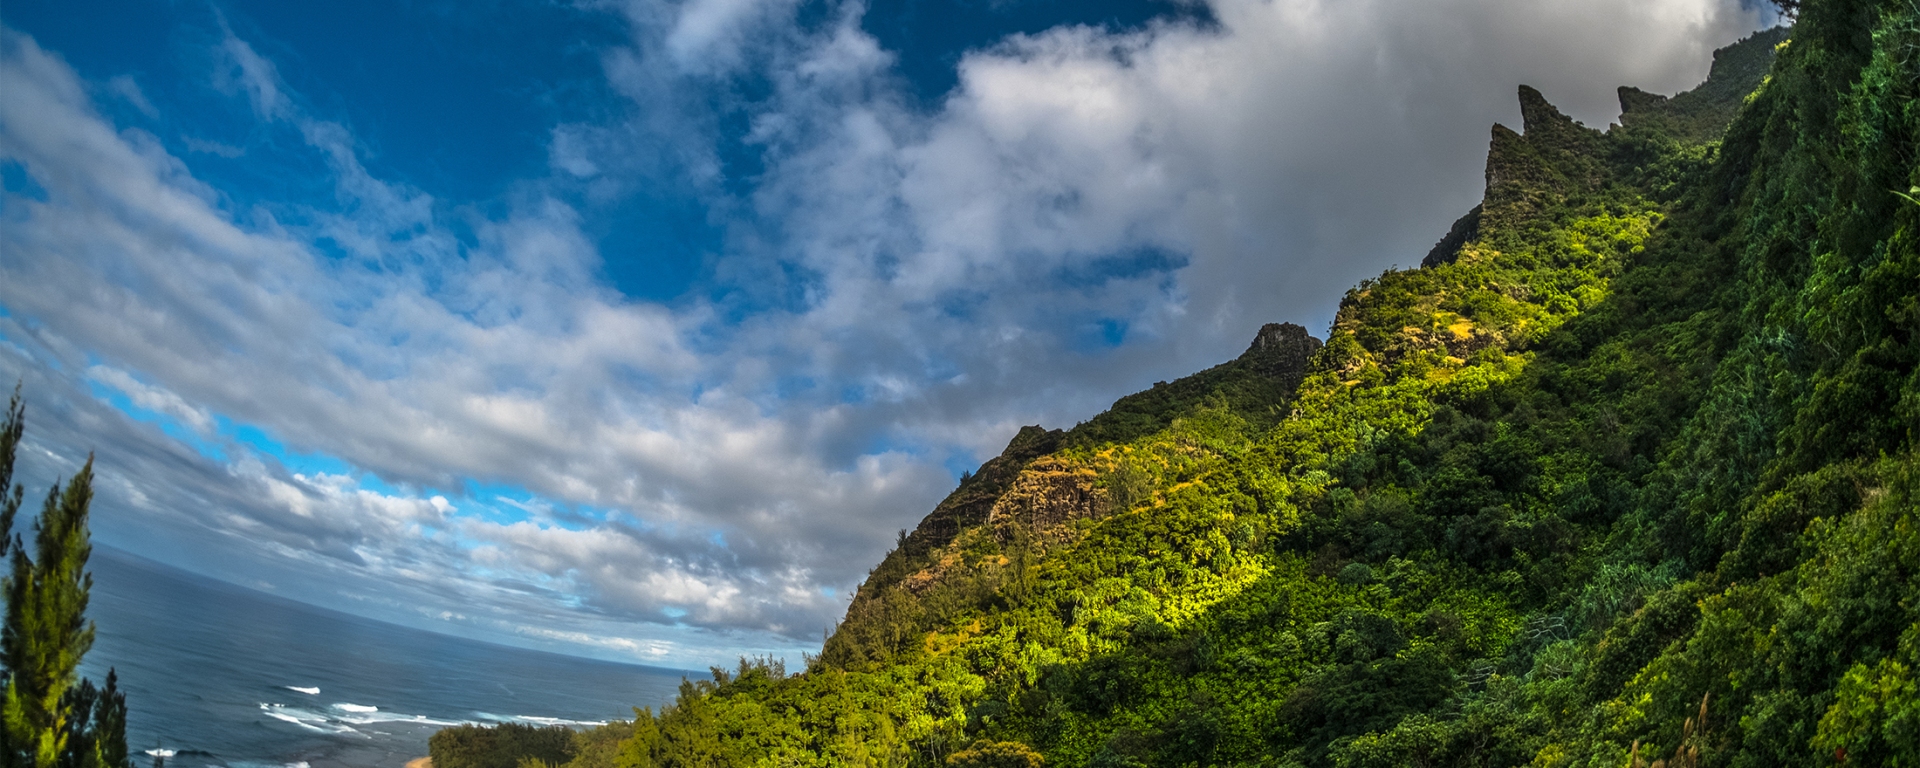 The Nā Pali Coast as seen from the Kalalau Trail on the island of Kauai, Hawaii.